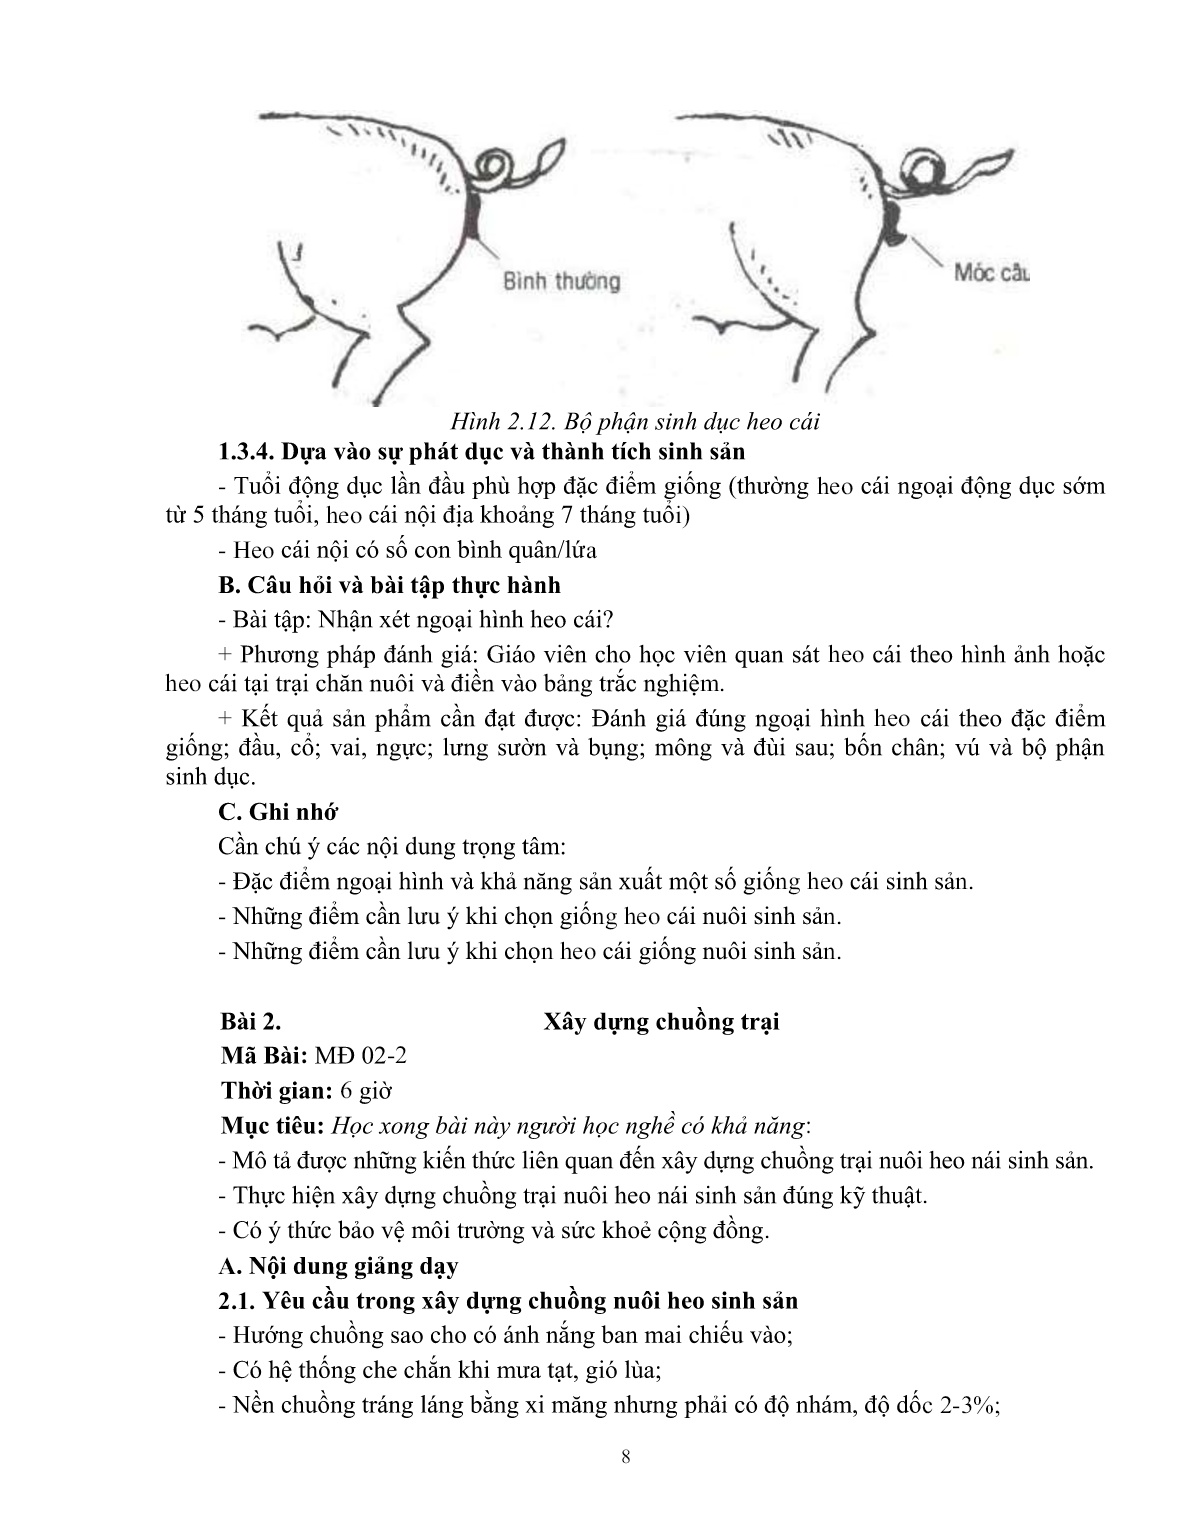 Giáo trình mô đun Chăn nuôi heo nái (Trình độ: Đào tạo dưới 3 tháng) trang 9